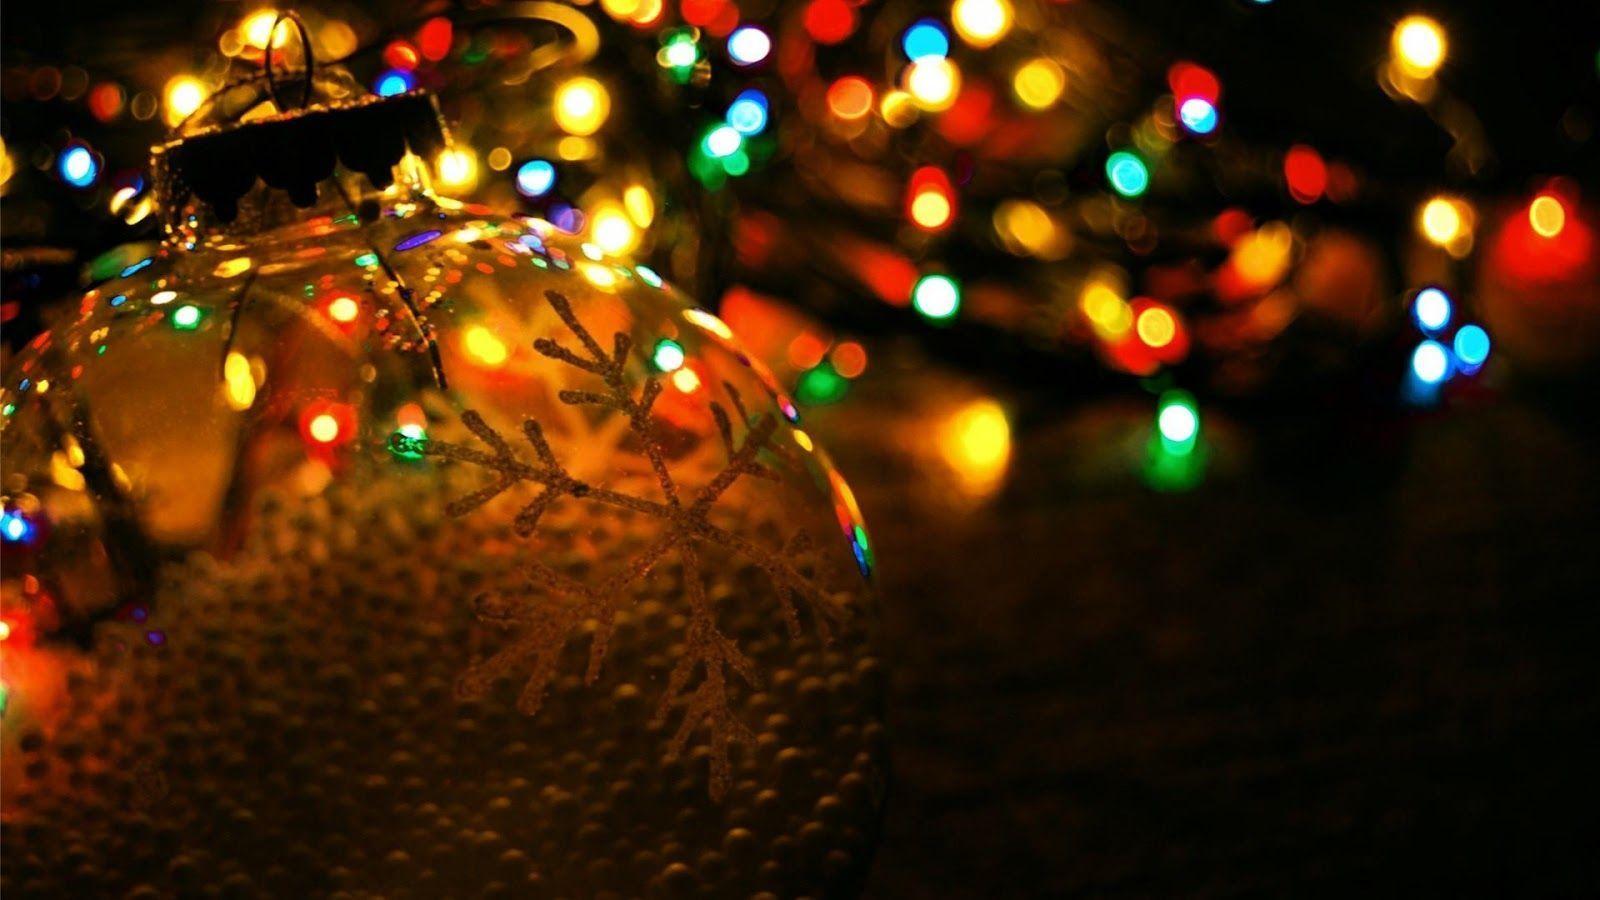 Christmas tree lights and a glass ball - Christmas lights